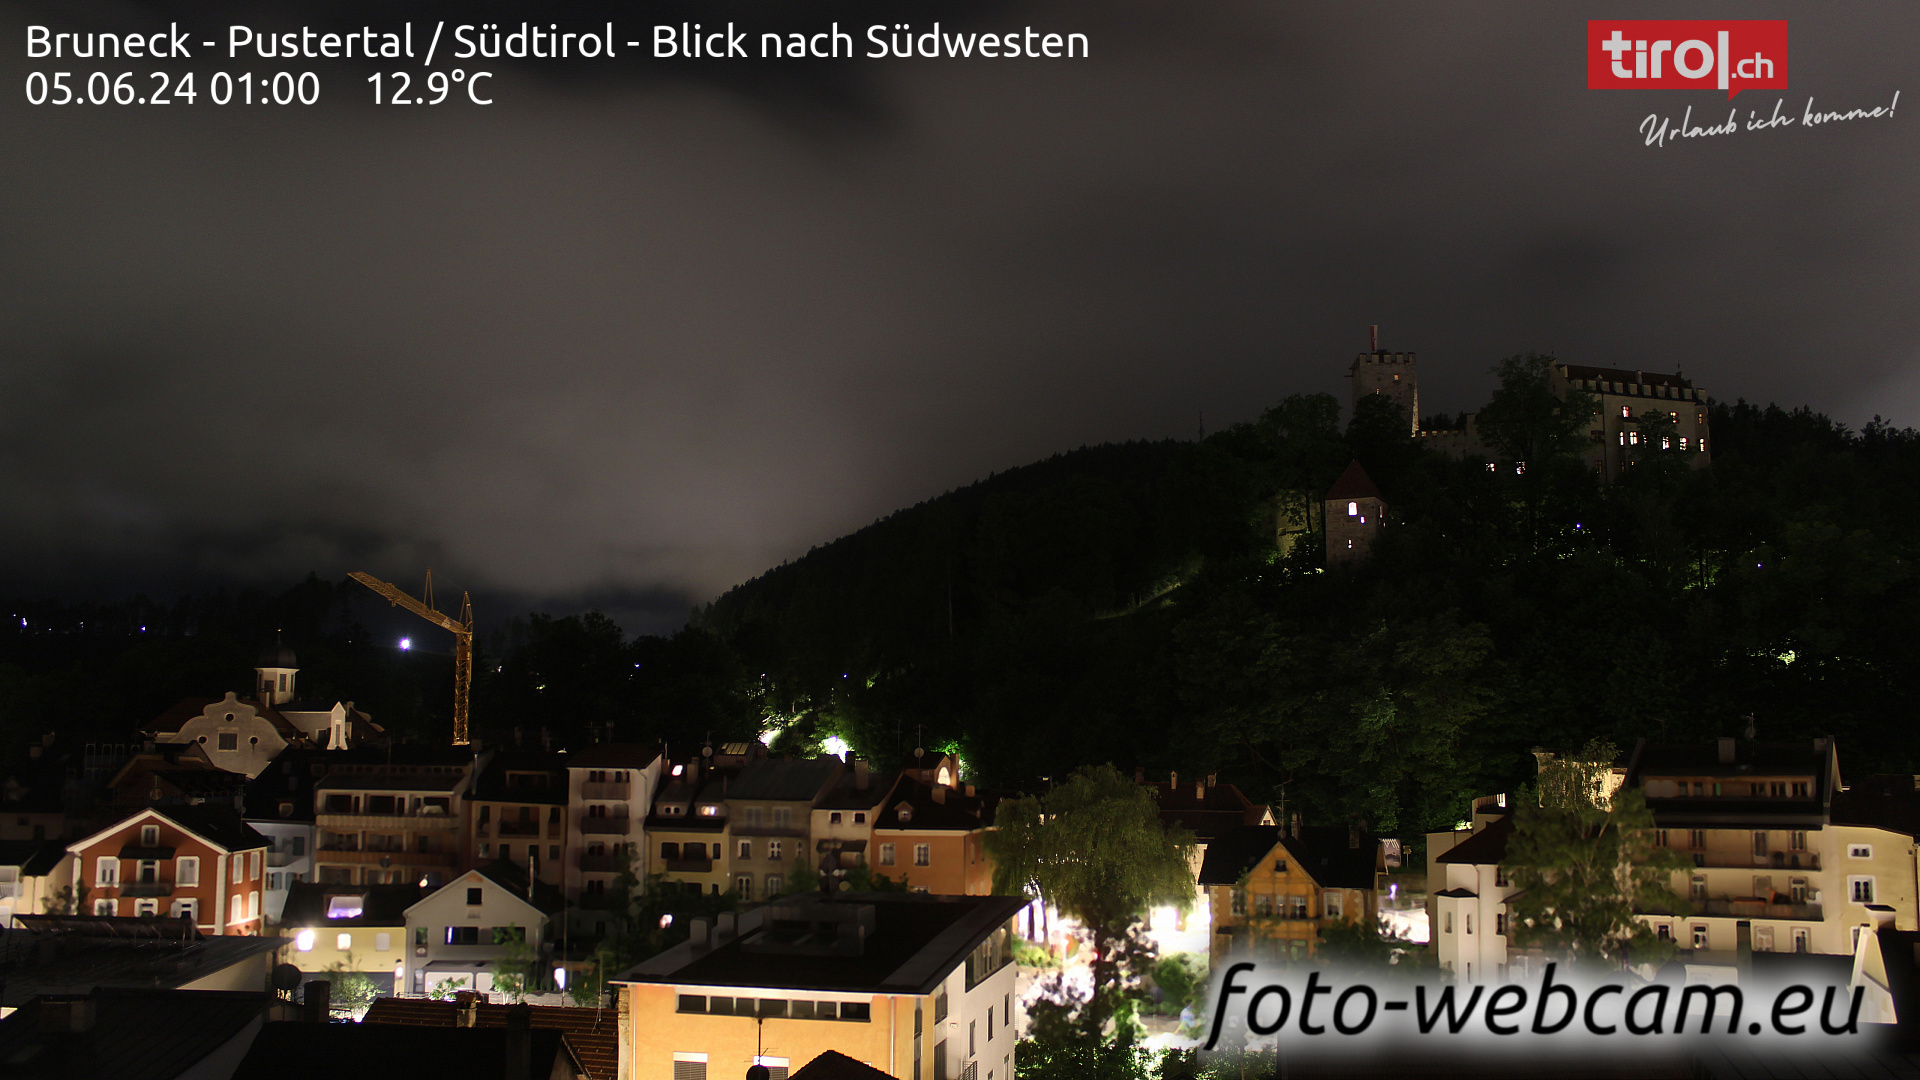 Bruneck Dom. 01:32